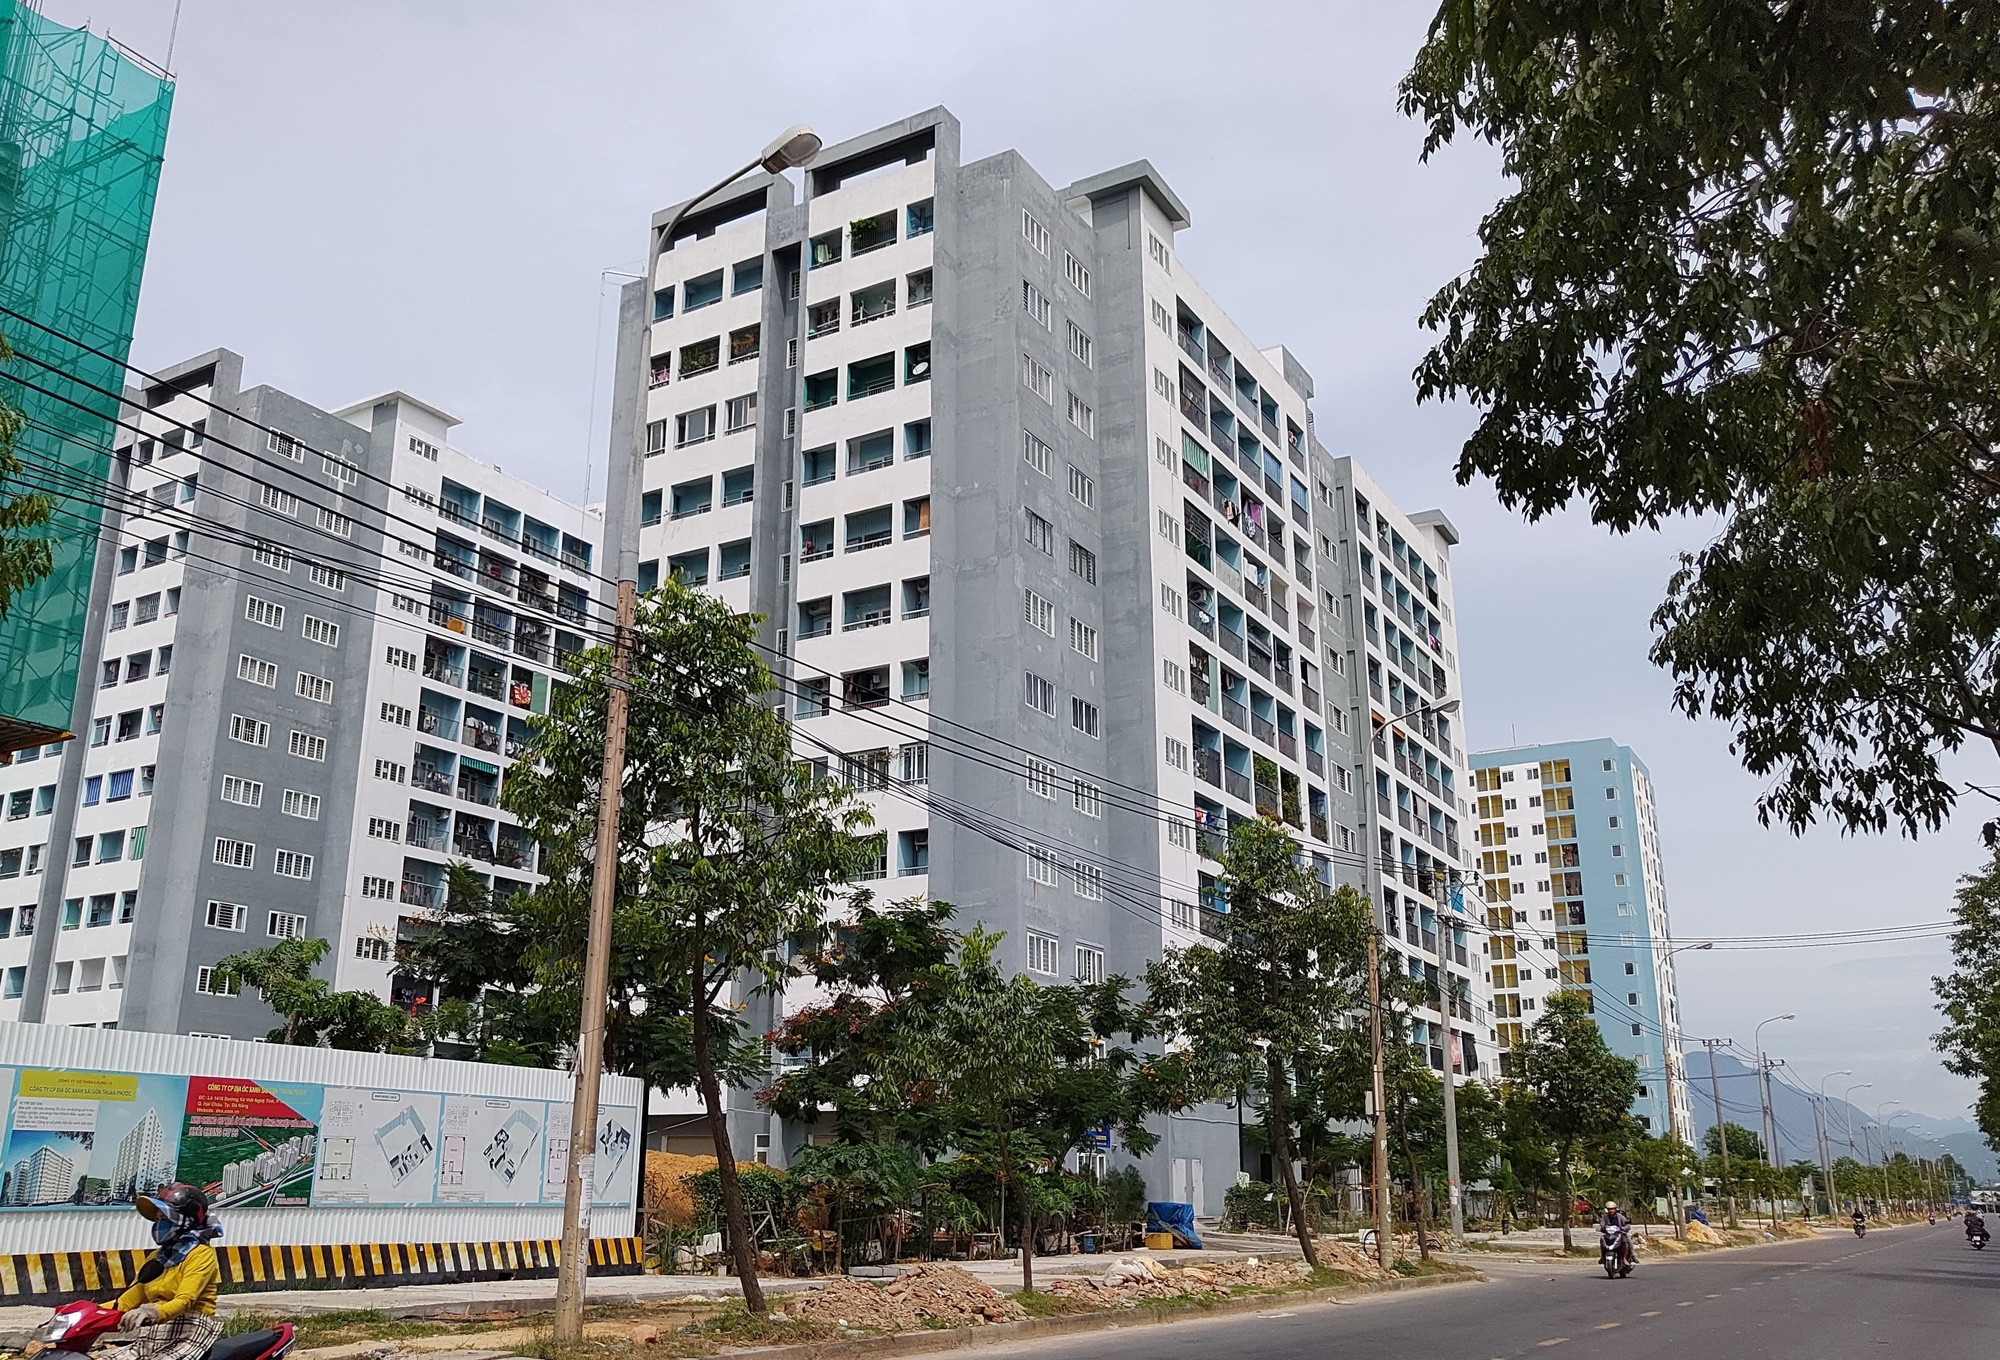 Đà Nẵng: Lừa bán căn hộ chung cư cho công nhân, chiếm đoạt hơn 1,2 tỉ đồng - Báo Người lao động